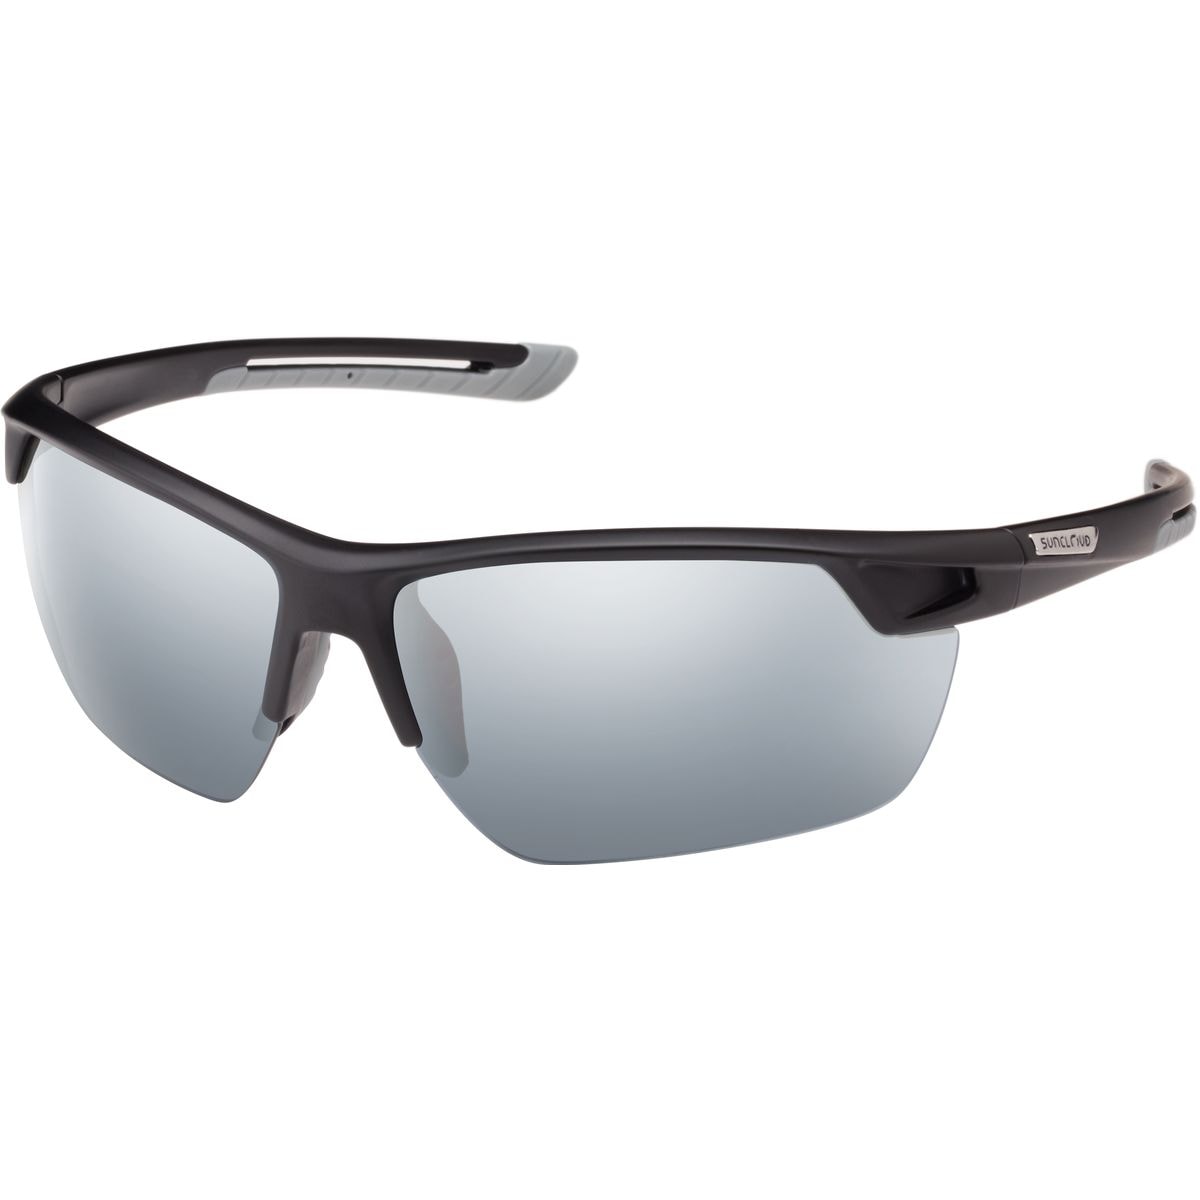 Поляризованные солнцезащитные очки contender Suncloud Polarized Optics, цвет matte black/silver mirror очки солнцезащитные stylemark polarized l1504a